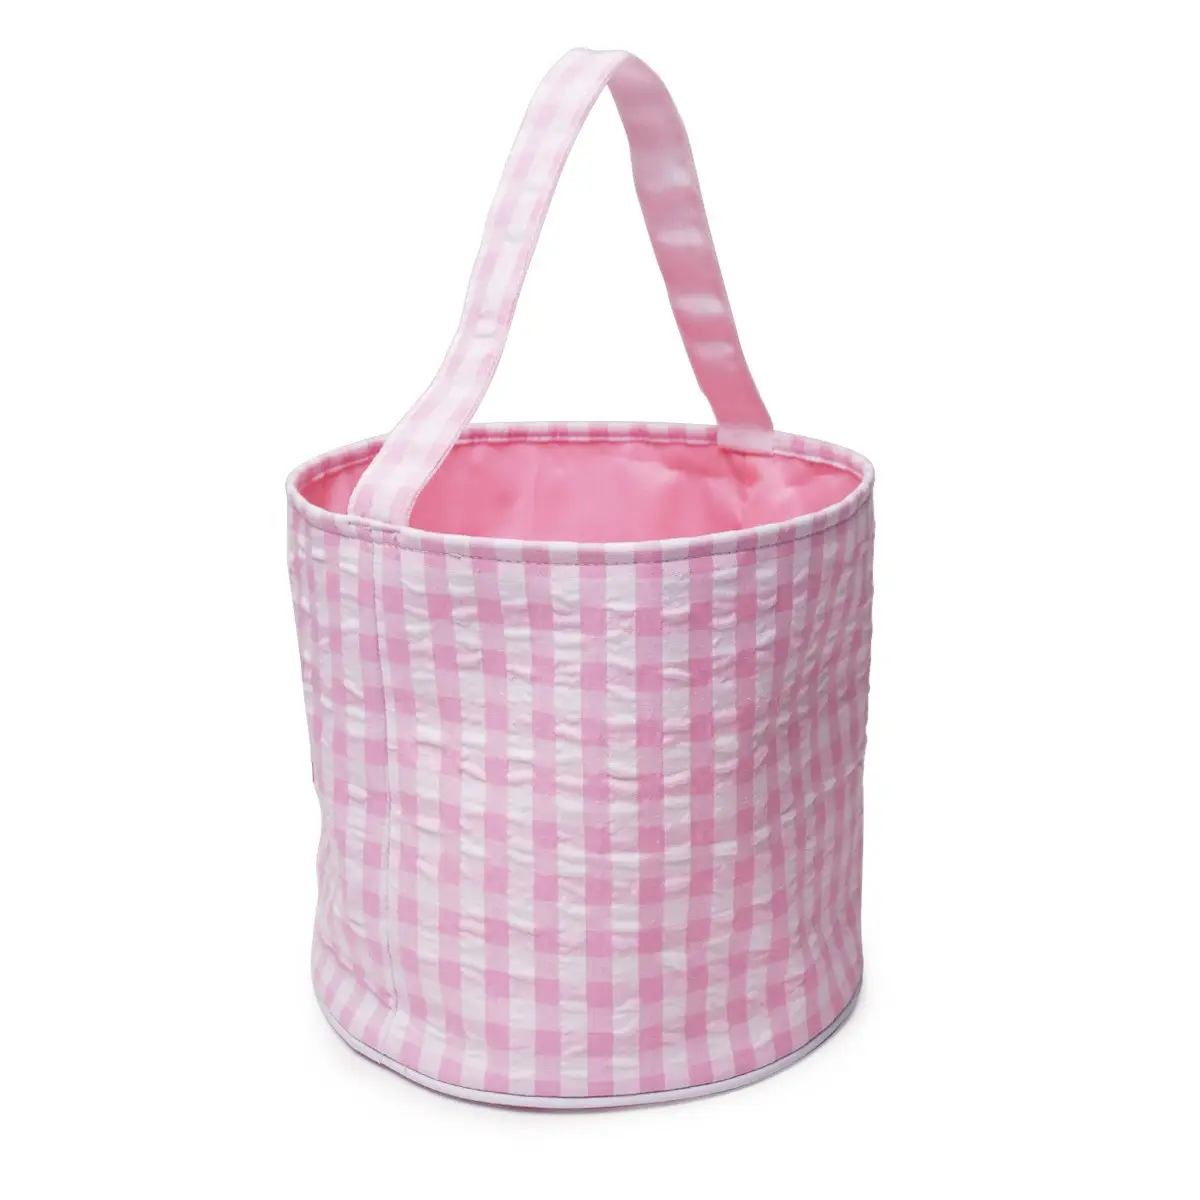 Strip Easter Tote Bag For Kid Gift Easter Bunny Candy Egg Storage Bag Sublimation Easter Basket Handbag Seersucker Tote Bag